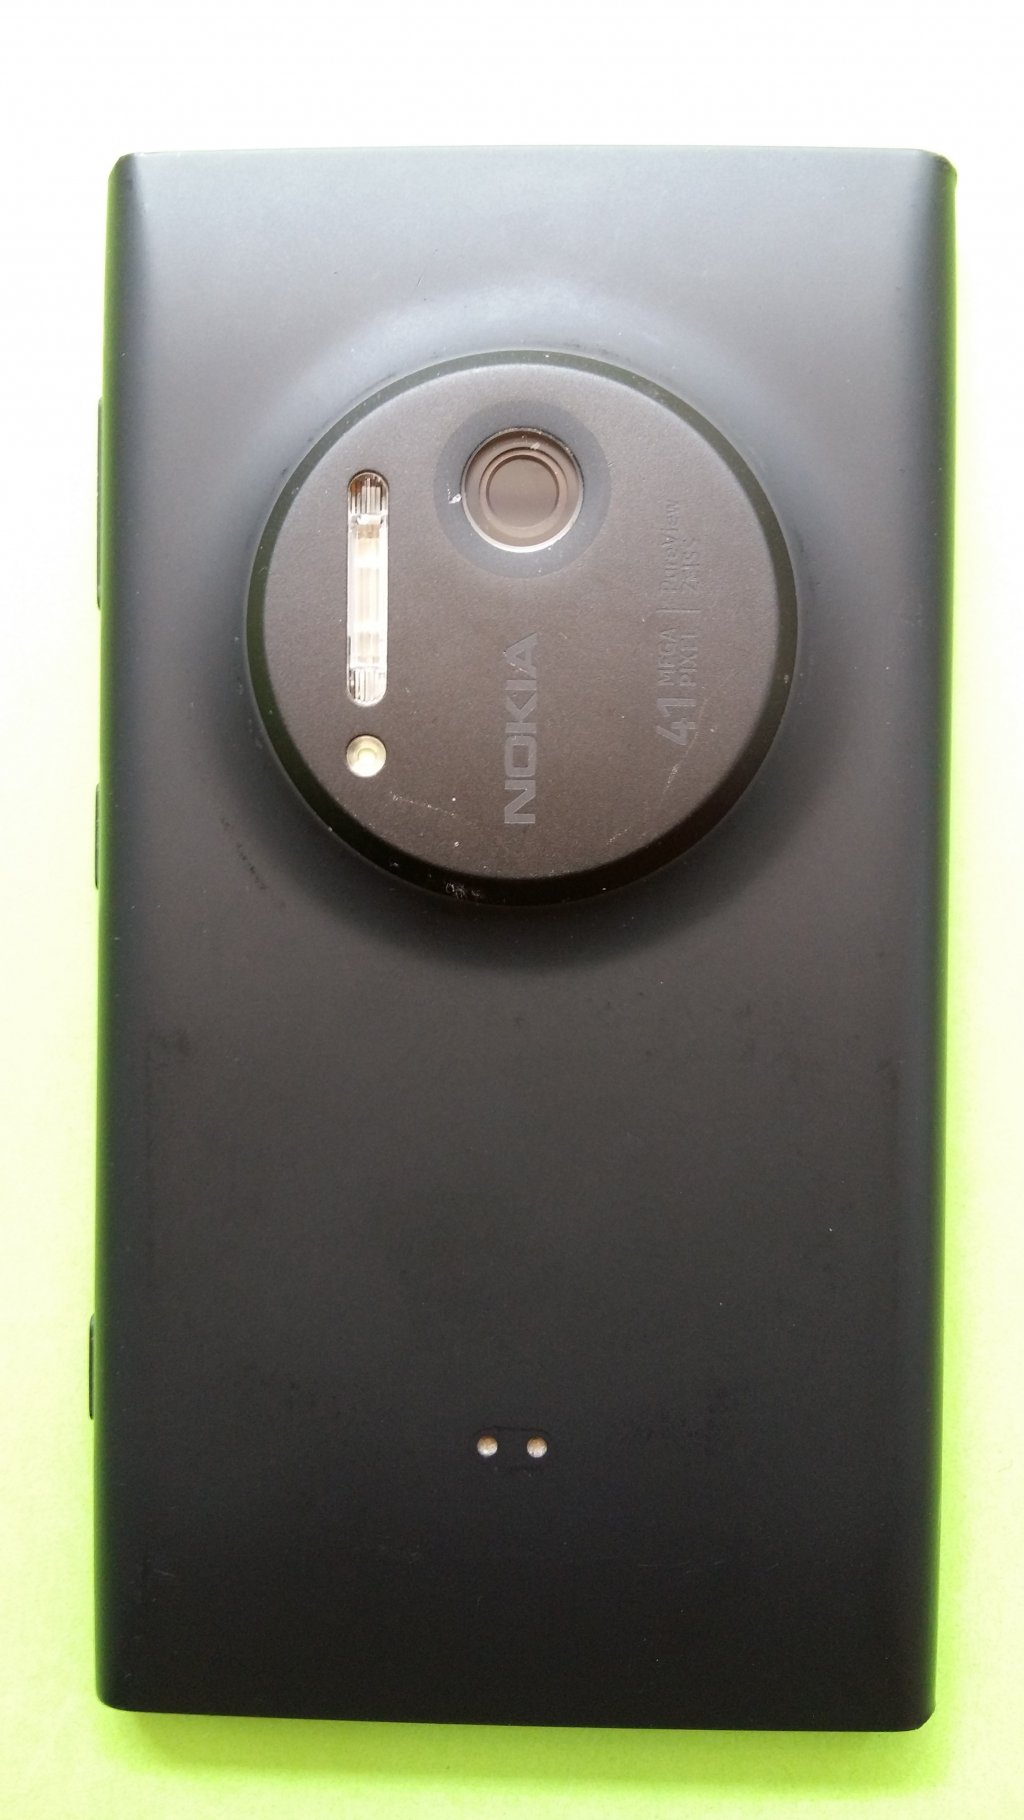 image-8259170-Nokia_1020_Lumia_(1)2.w640.jpg